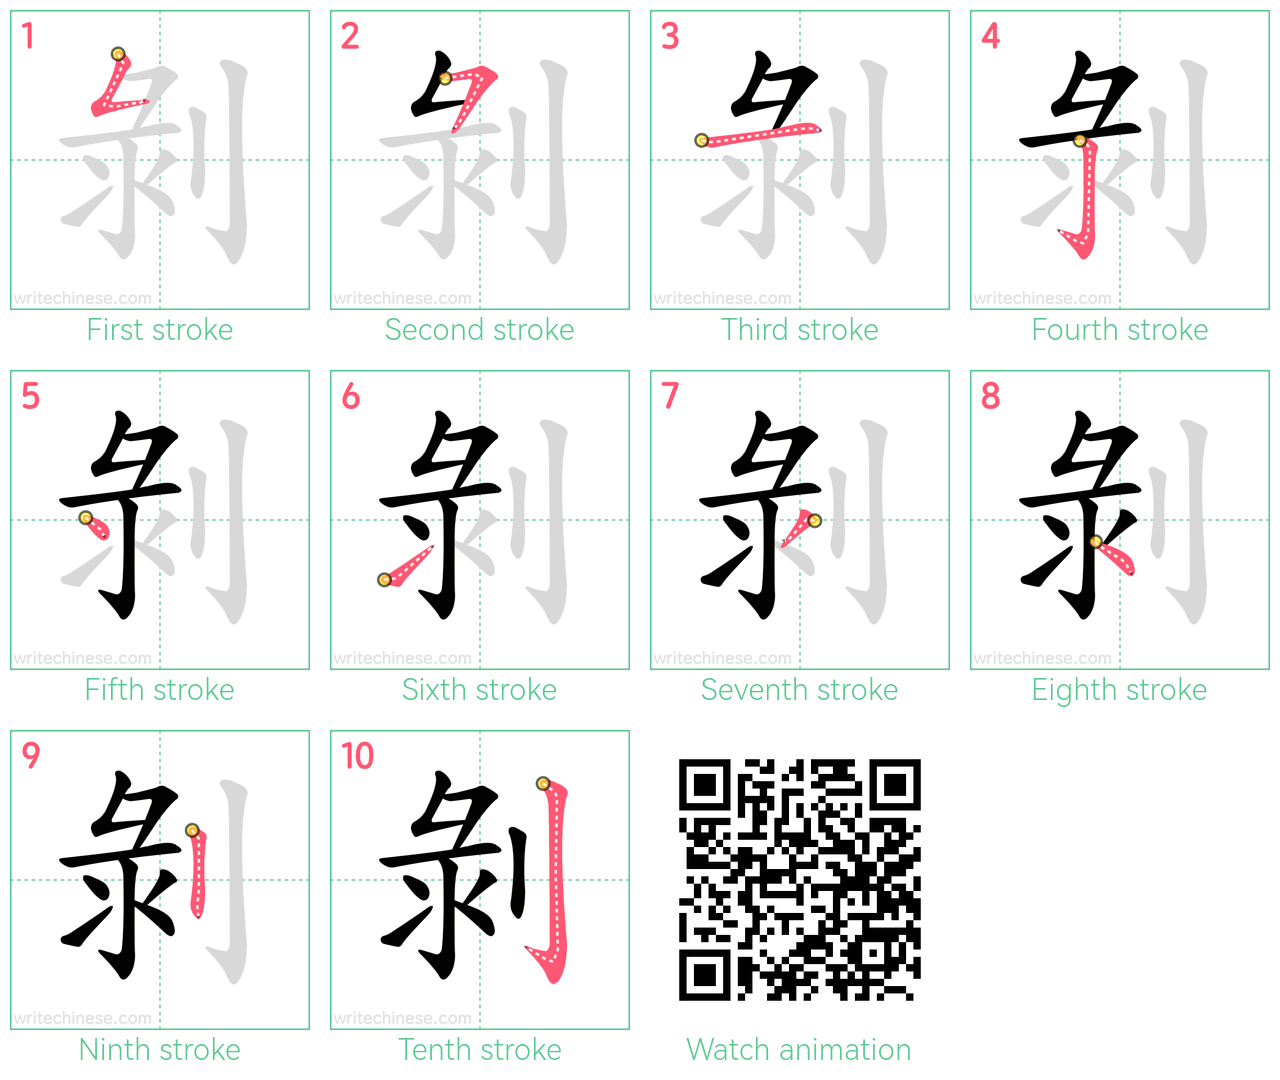 剝 step-by-step stroke order diagrams